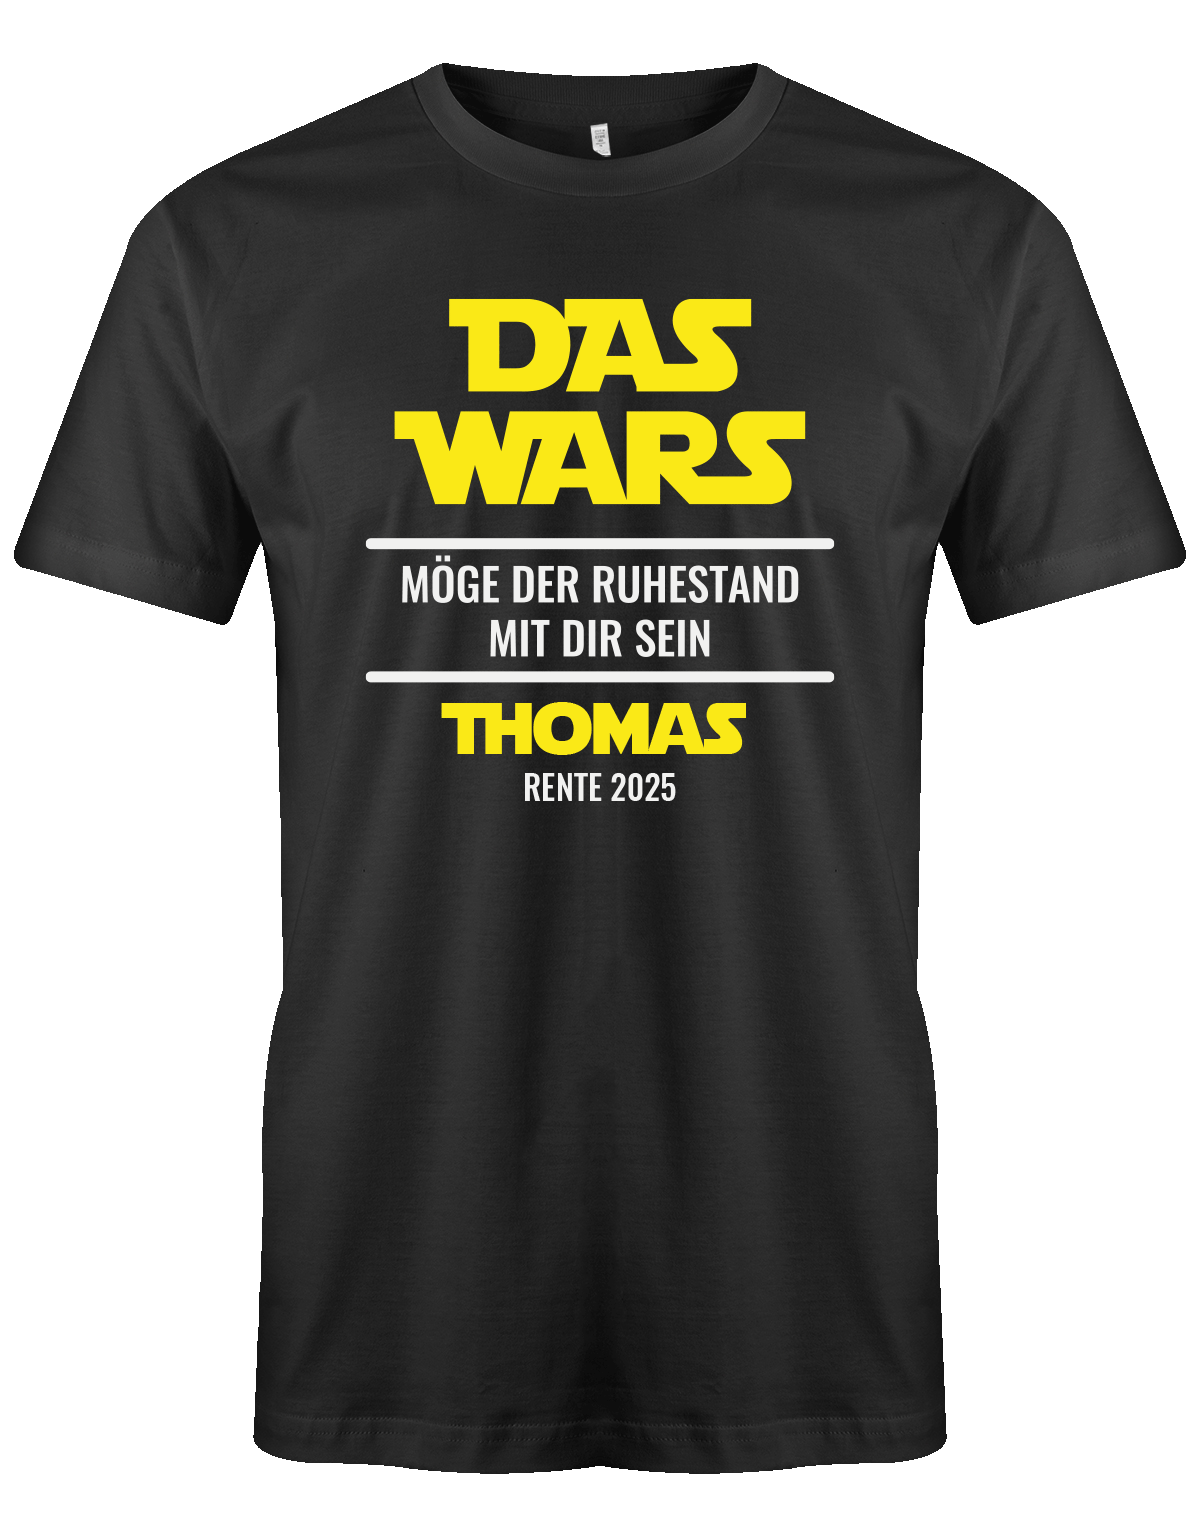 das-wars-moege-der-ruhestand-mit-dir-sein-rente-2025-schwarz-tshirt-shirt-T-shirt